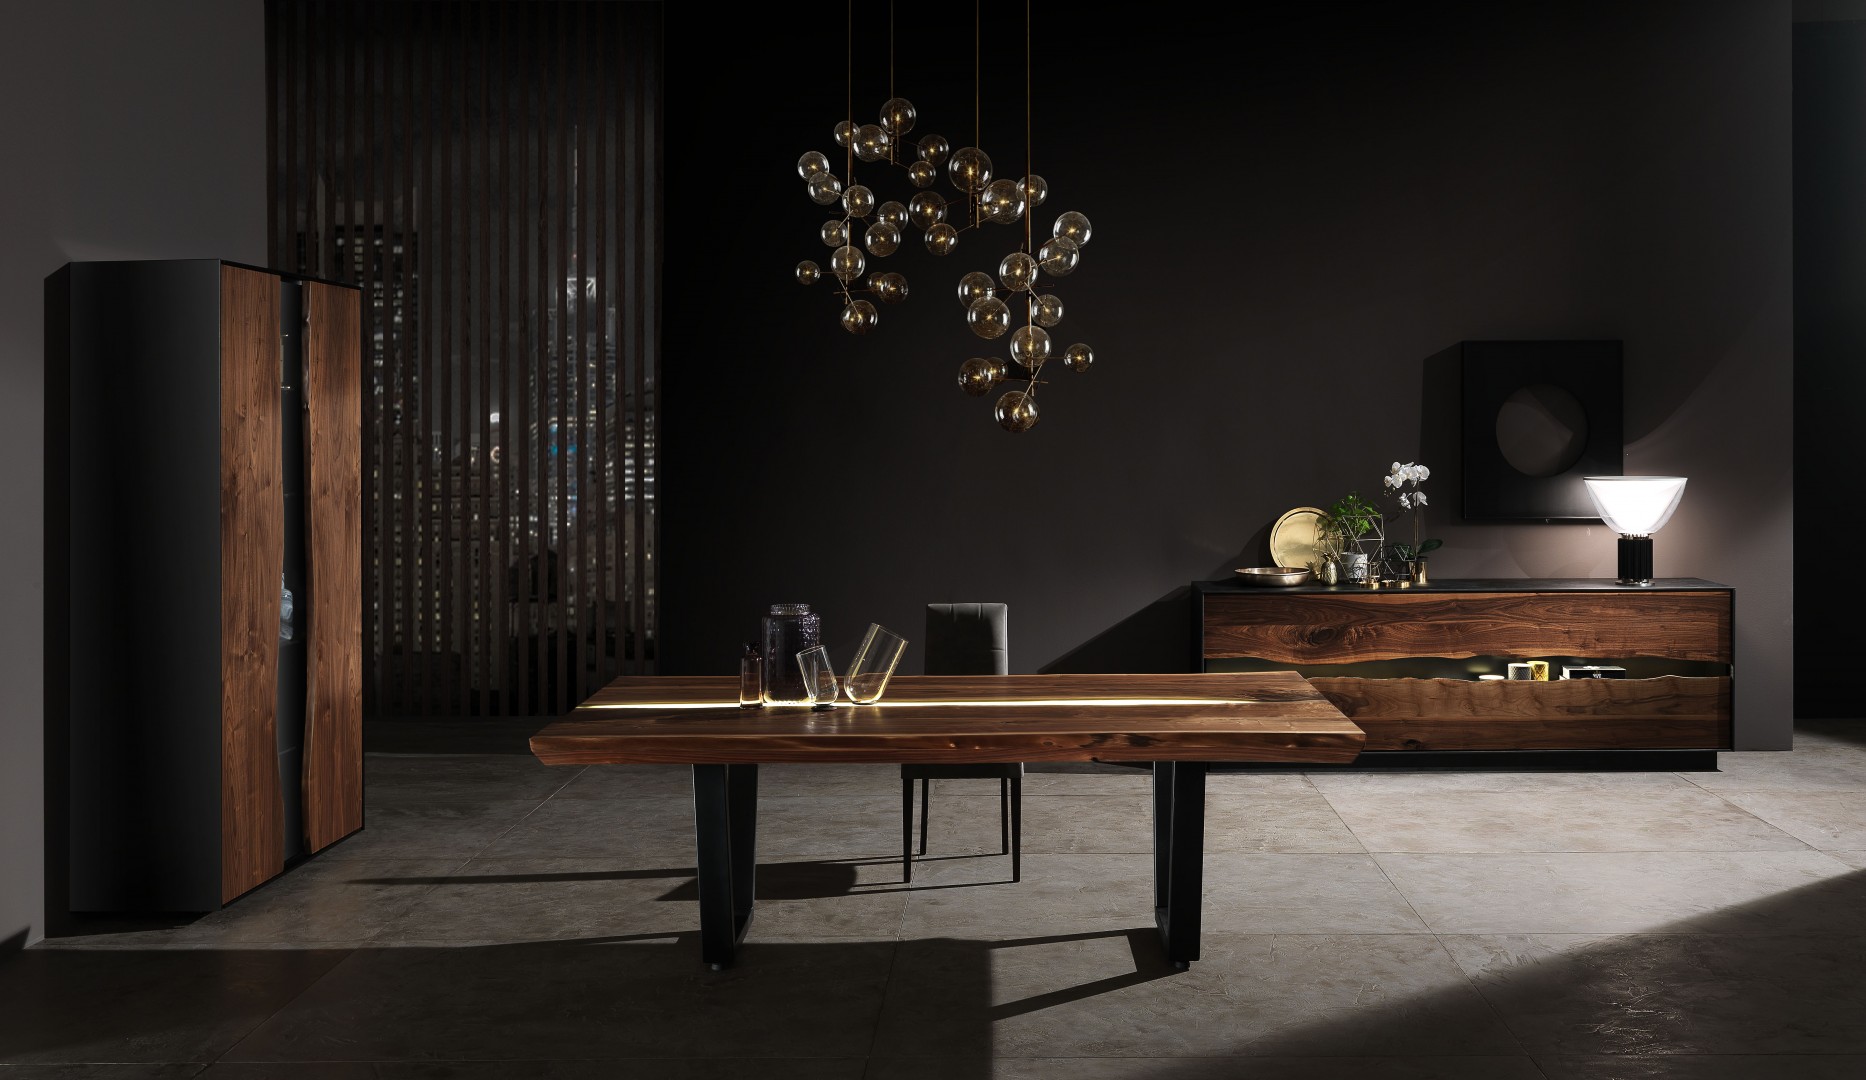 Living room di design disegnato da Francesco Profili. L'ambientazione è composta da un tavolo, una cassettiera e una credenza, tutti e tre sono oggetti di alto design italiano.